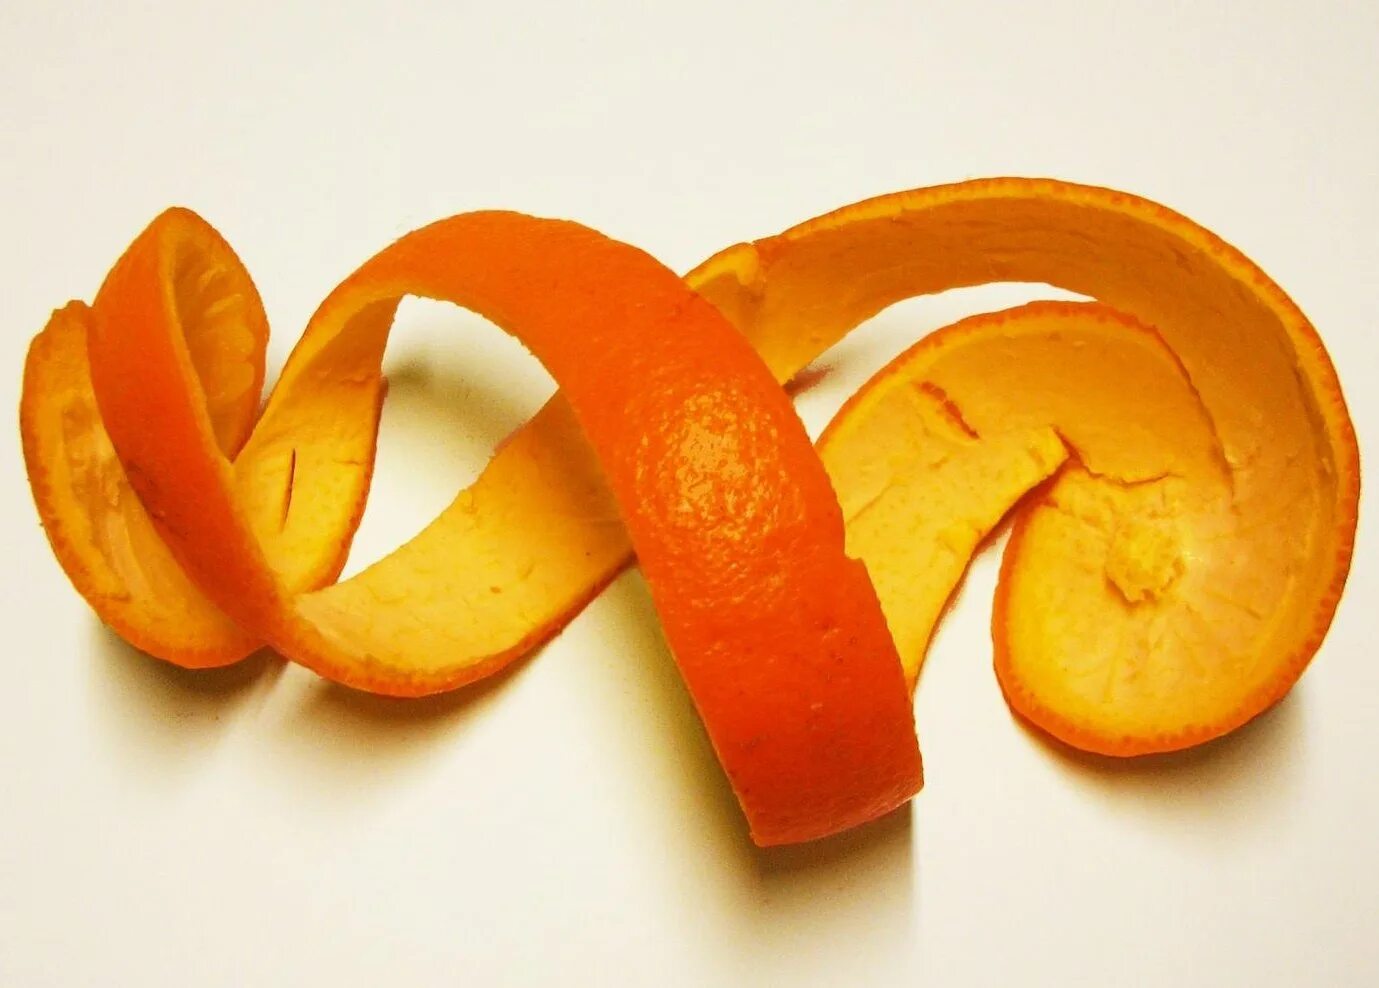 6 кожура. Кожура апельсина. Кожура цитрусовых плодов. Нарезанные апельсиновые корки. Шкурка от апельсина.